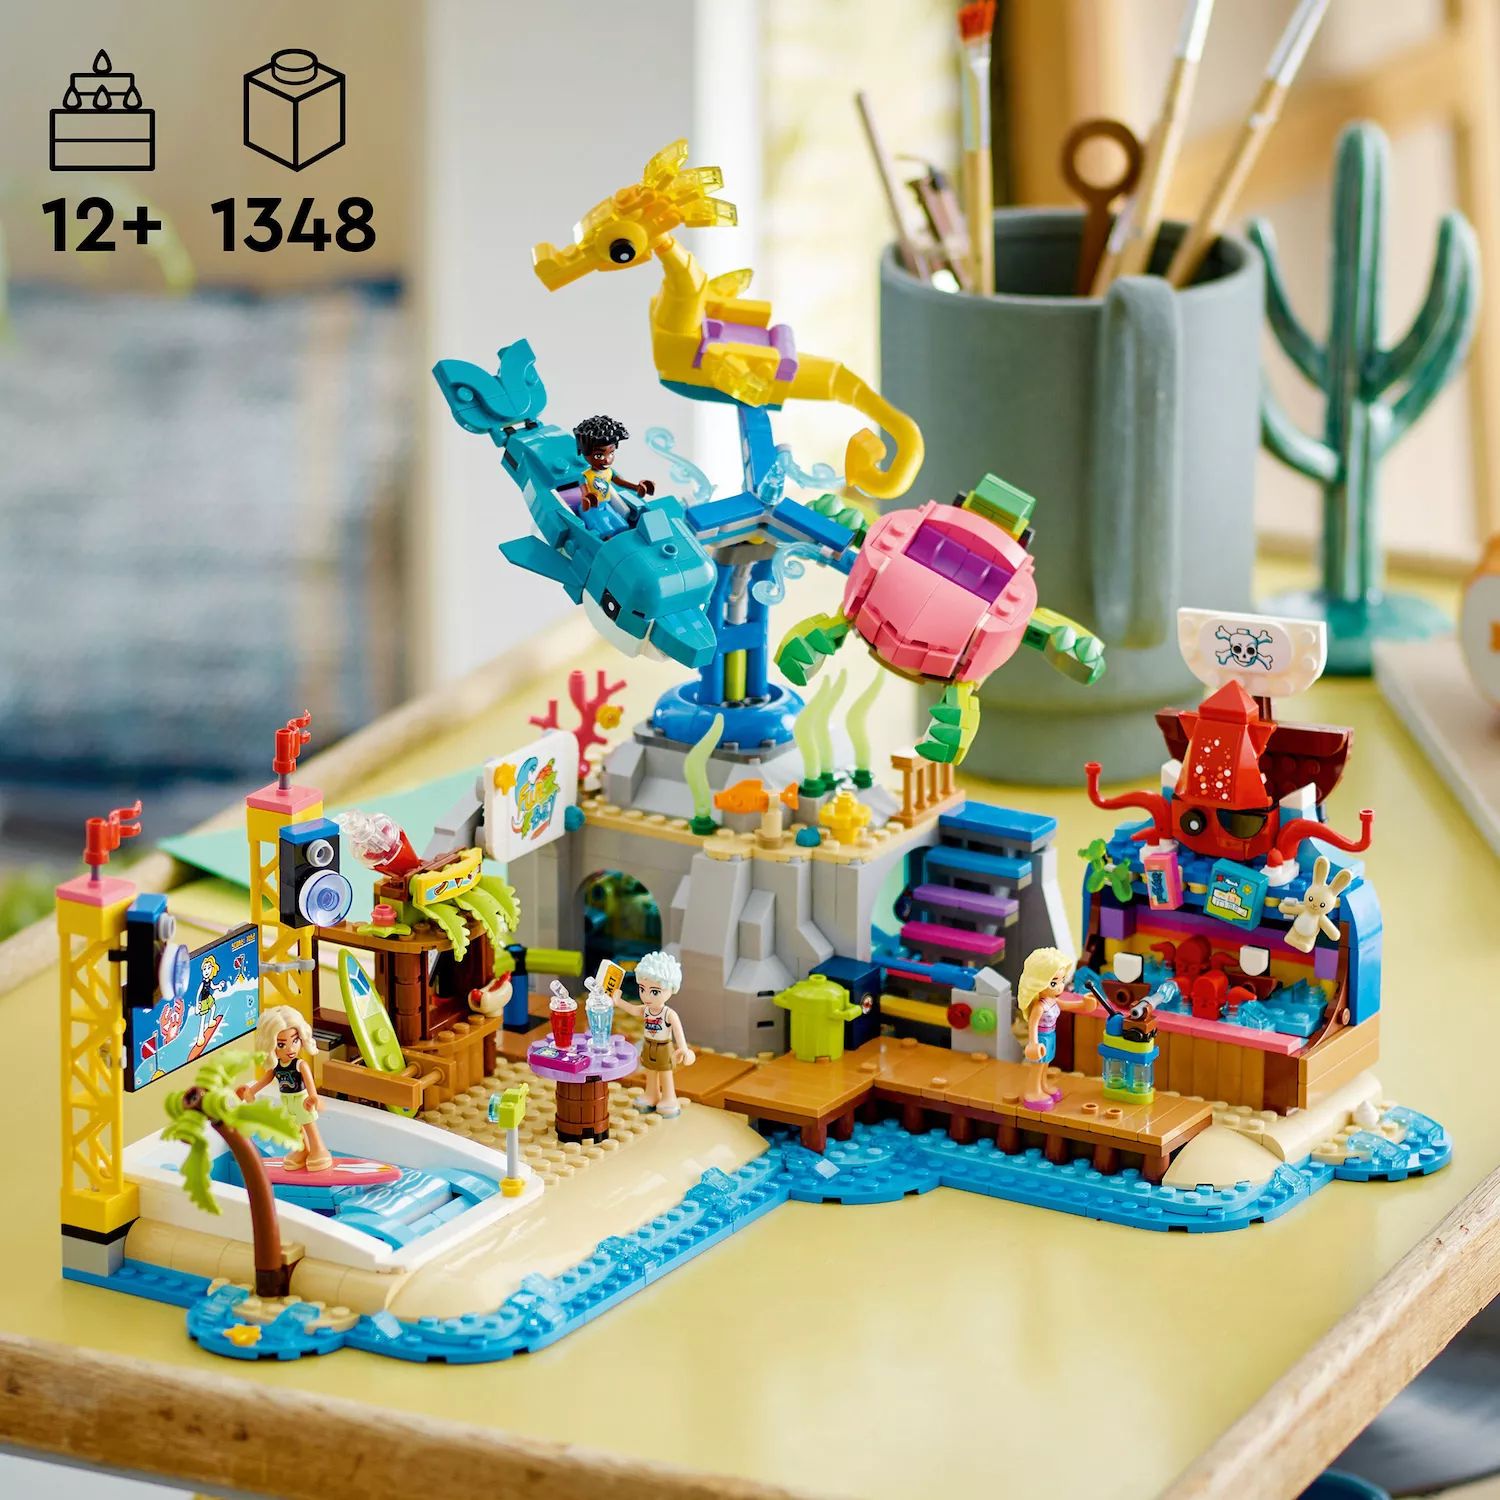 Конструктор LEGO Friends для подростков в пляжном парке развлечений 41737 (1348 деталей) LEGO конструктор lego friends 41129 киоск с хот догами в парке развлечений